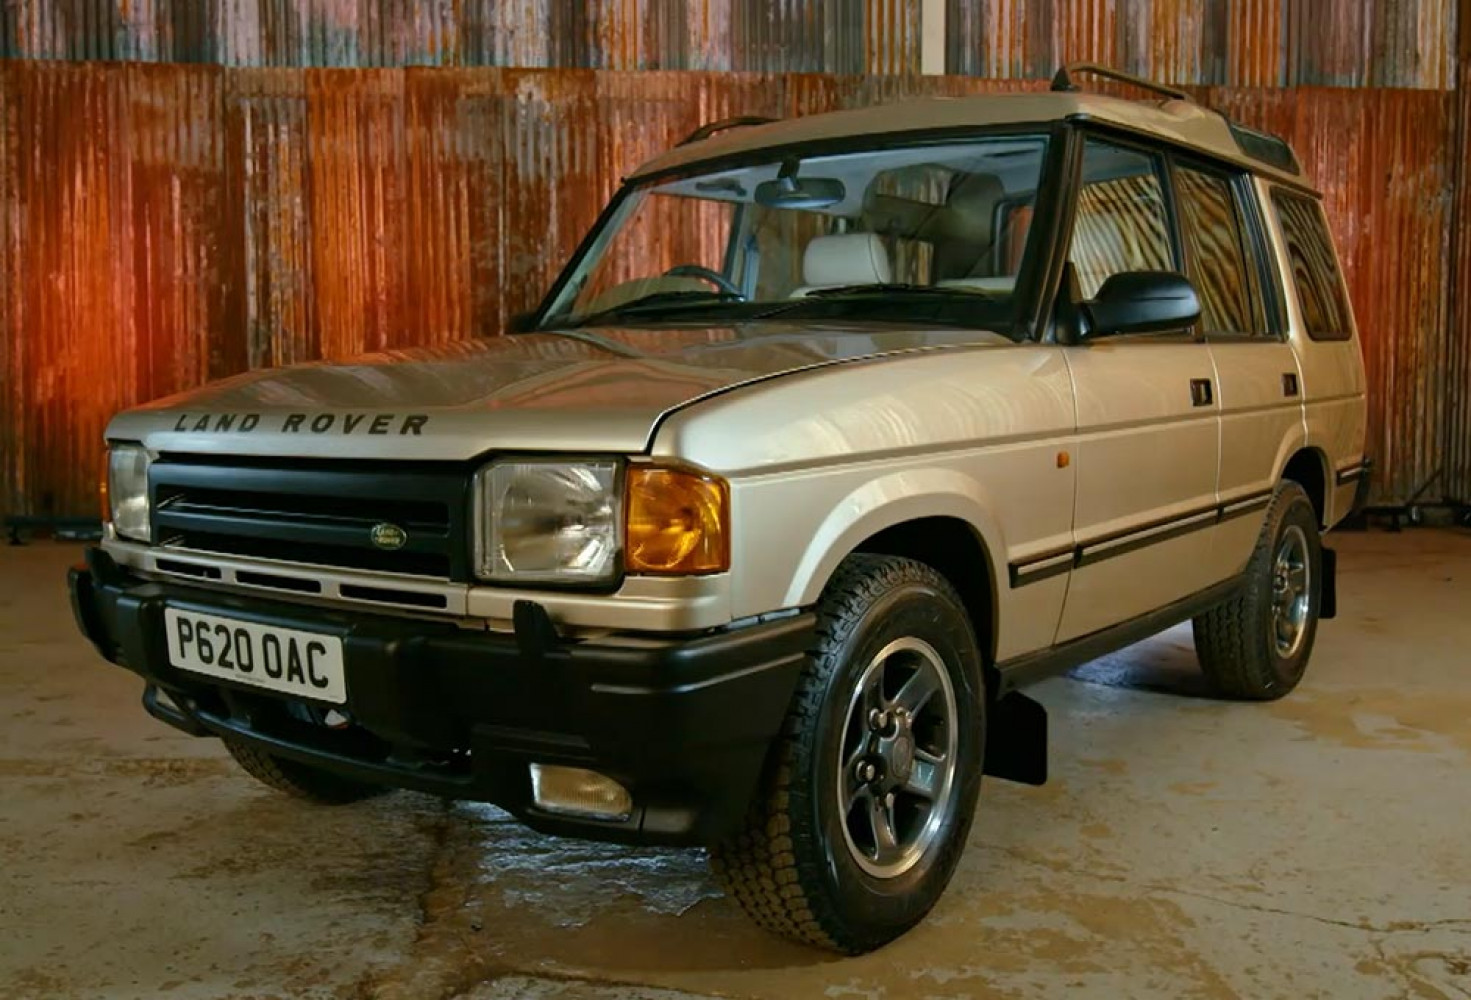 VIDEO: Muhteşem Land Rover Discovery dönüşümü